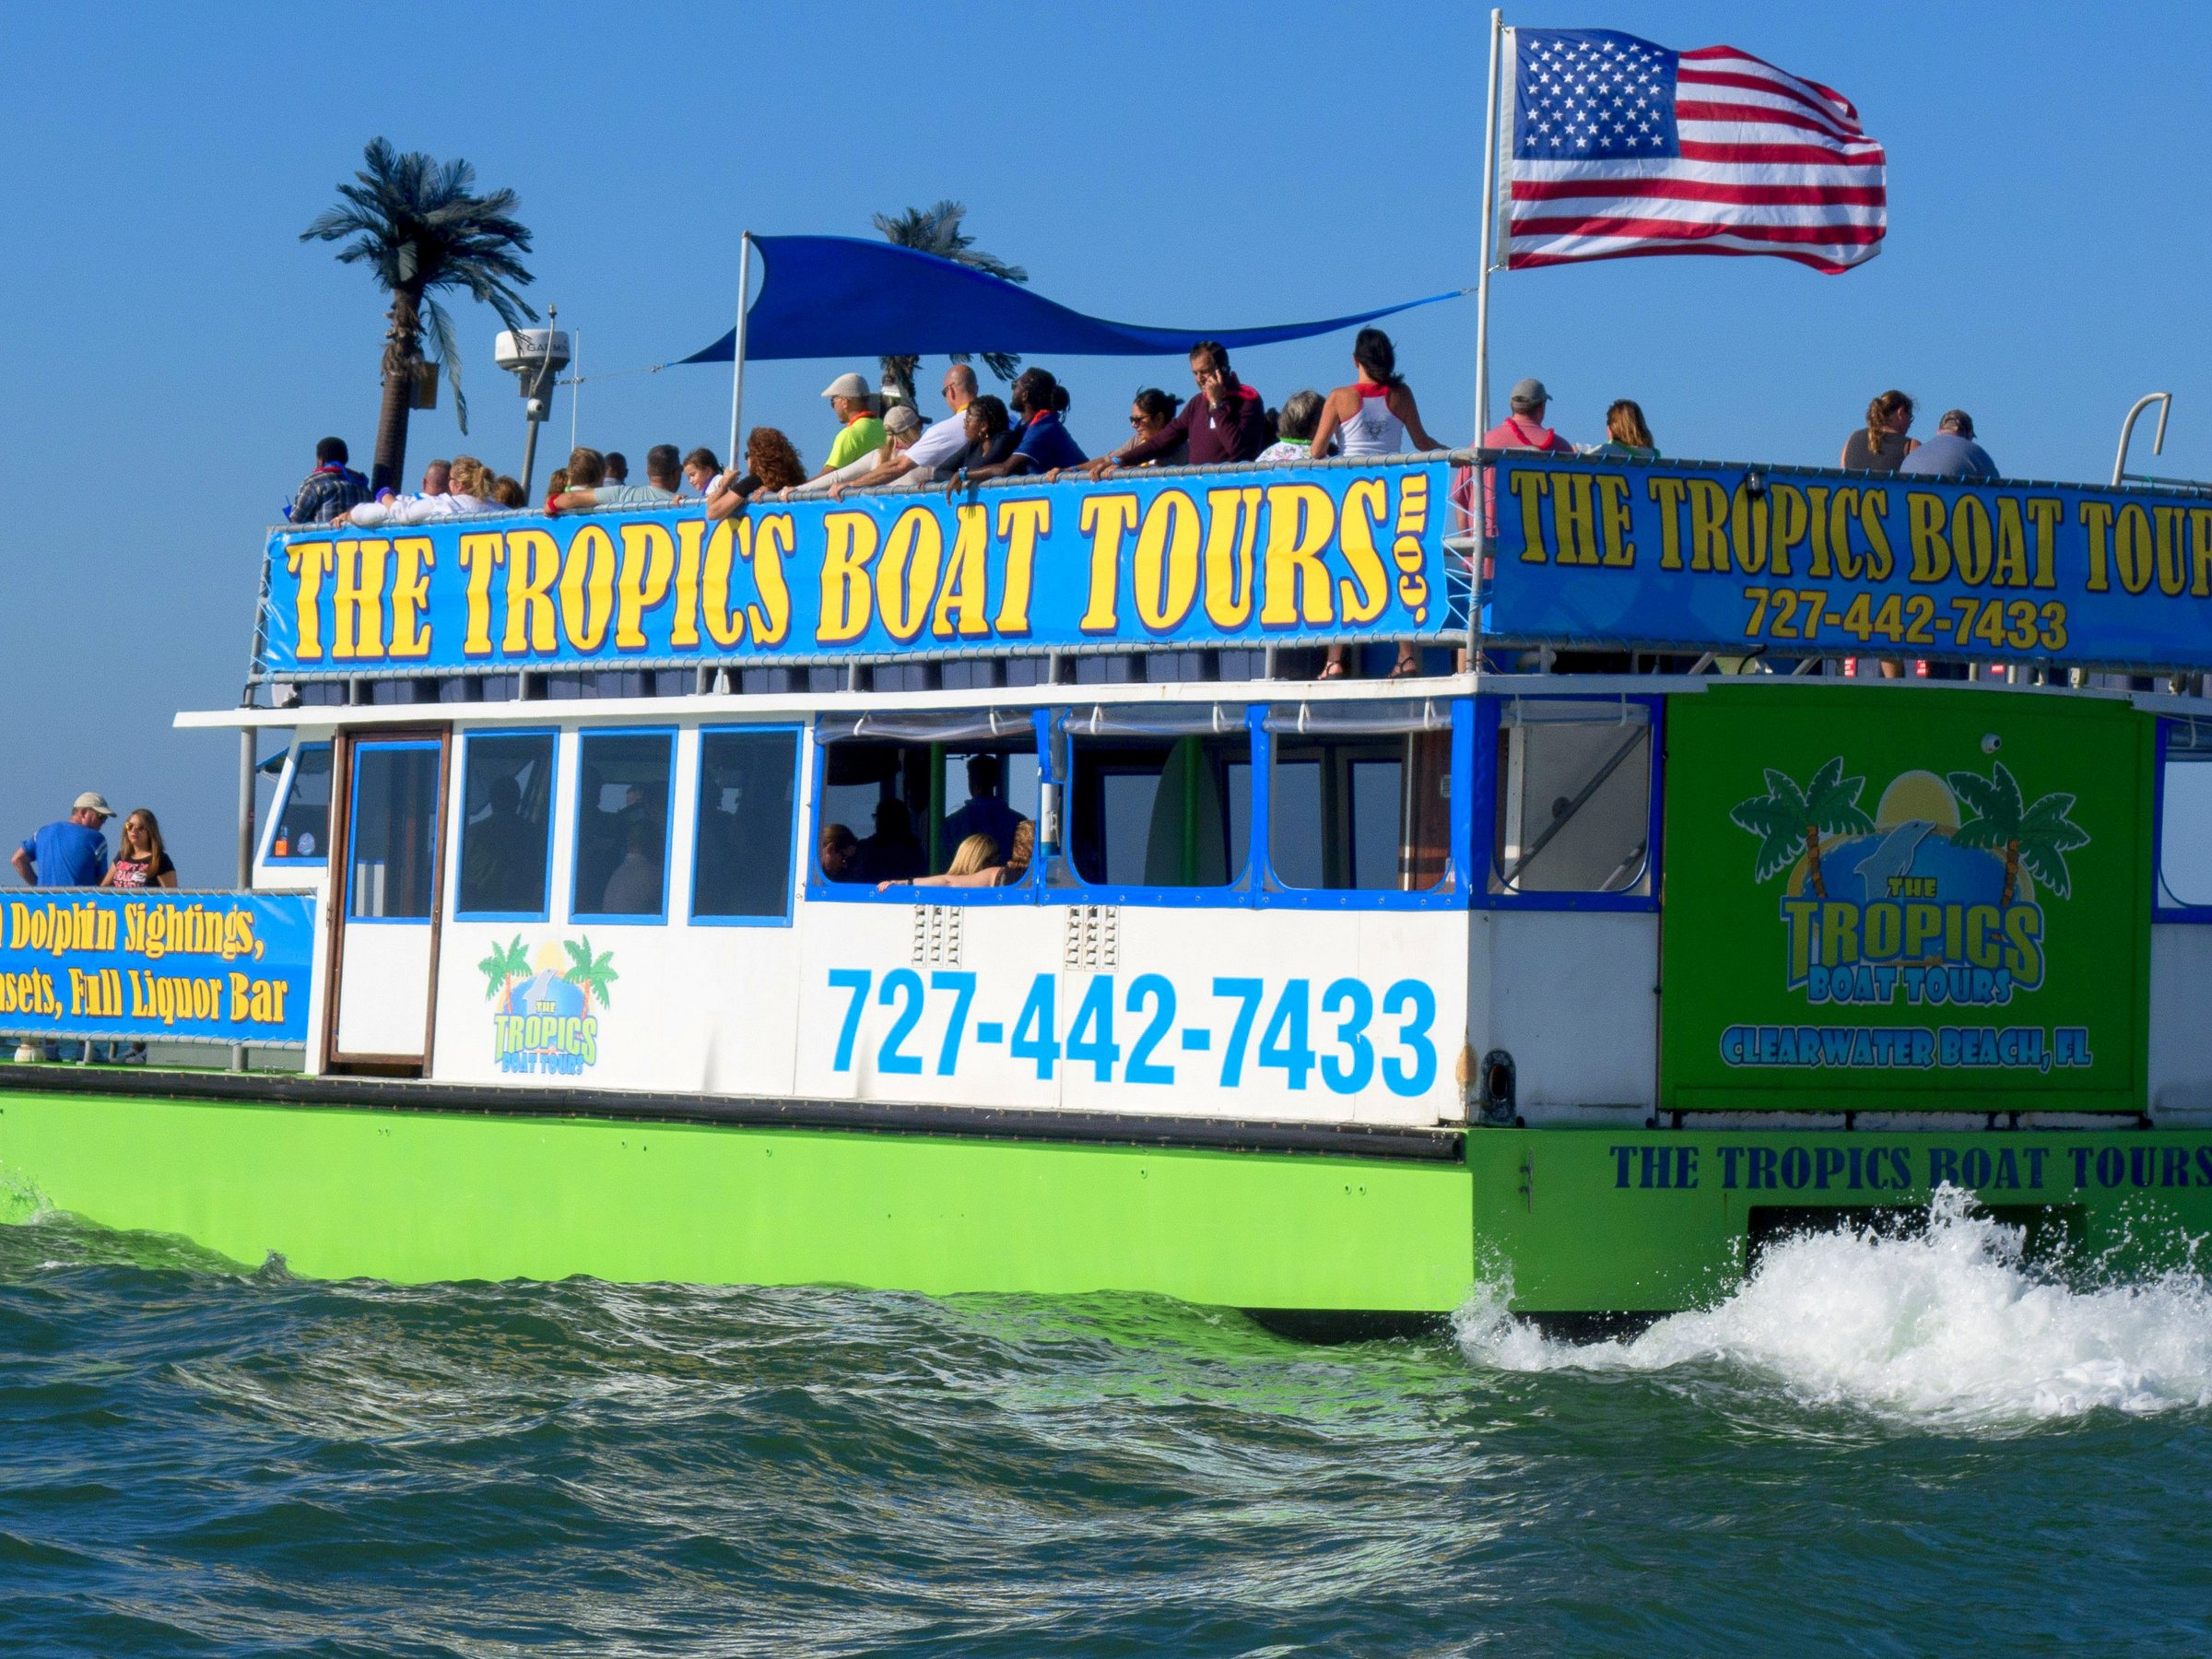 teeling boat tours